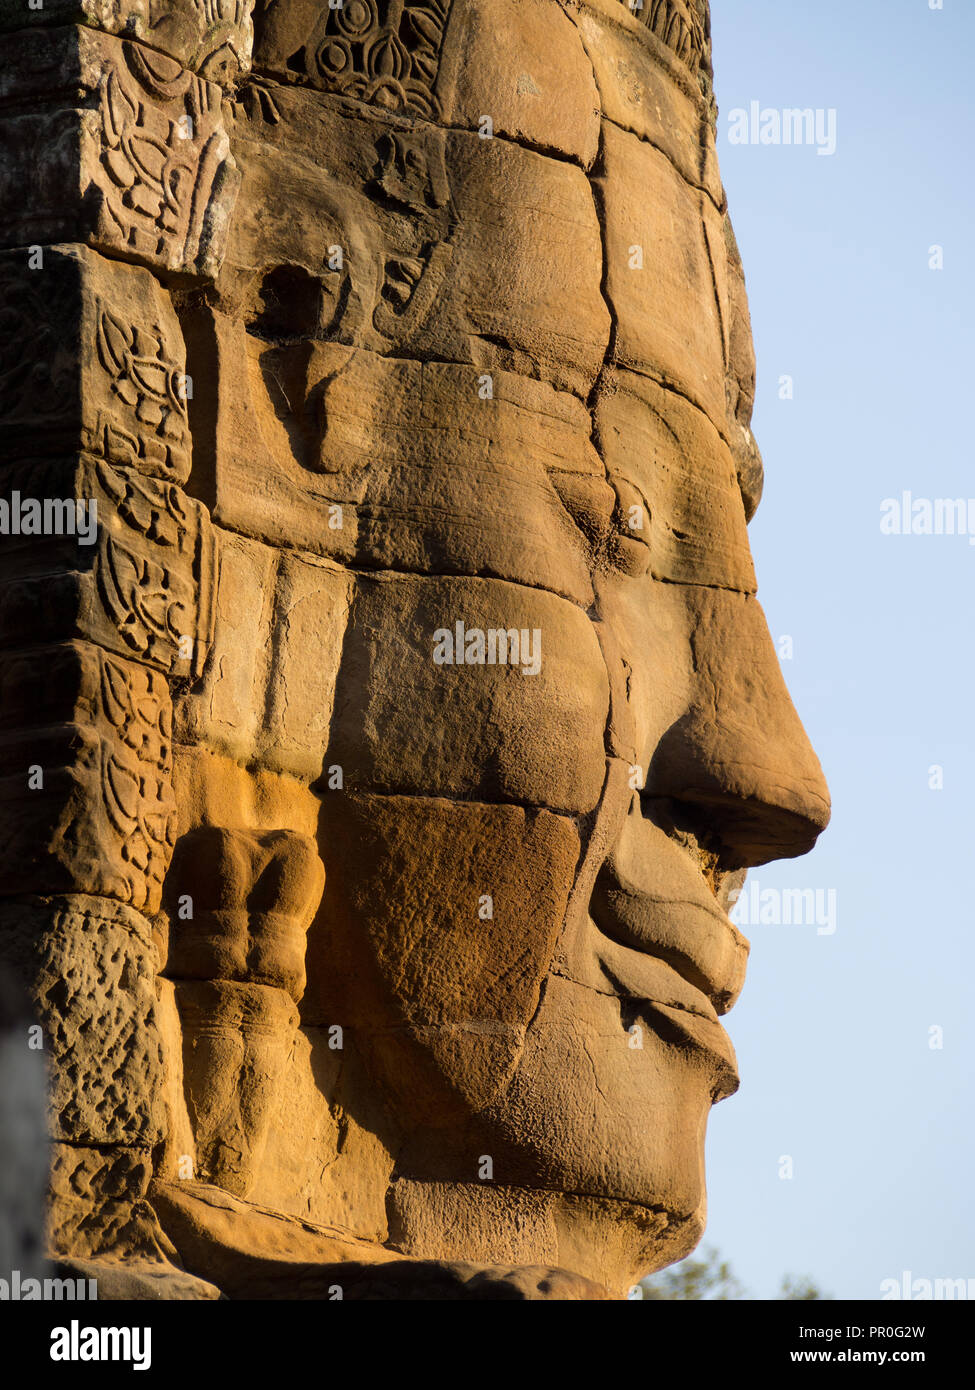 Pierre énorme visage, temple Bayon, Angkor Wat complexe, UNESCO World Heritage Site, près de Siem Reap, Cambodge, Indochine, Asie du Sud-Est, l'Asie Banque D'Images